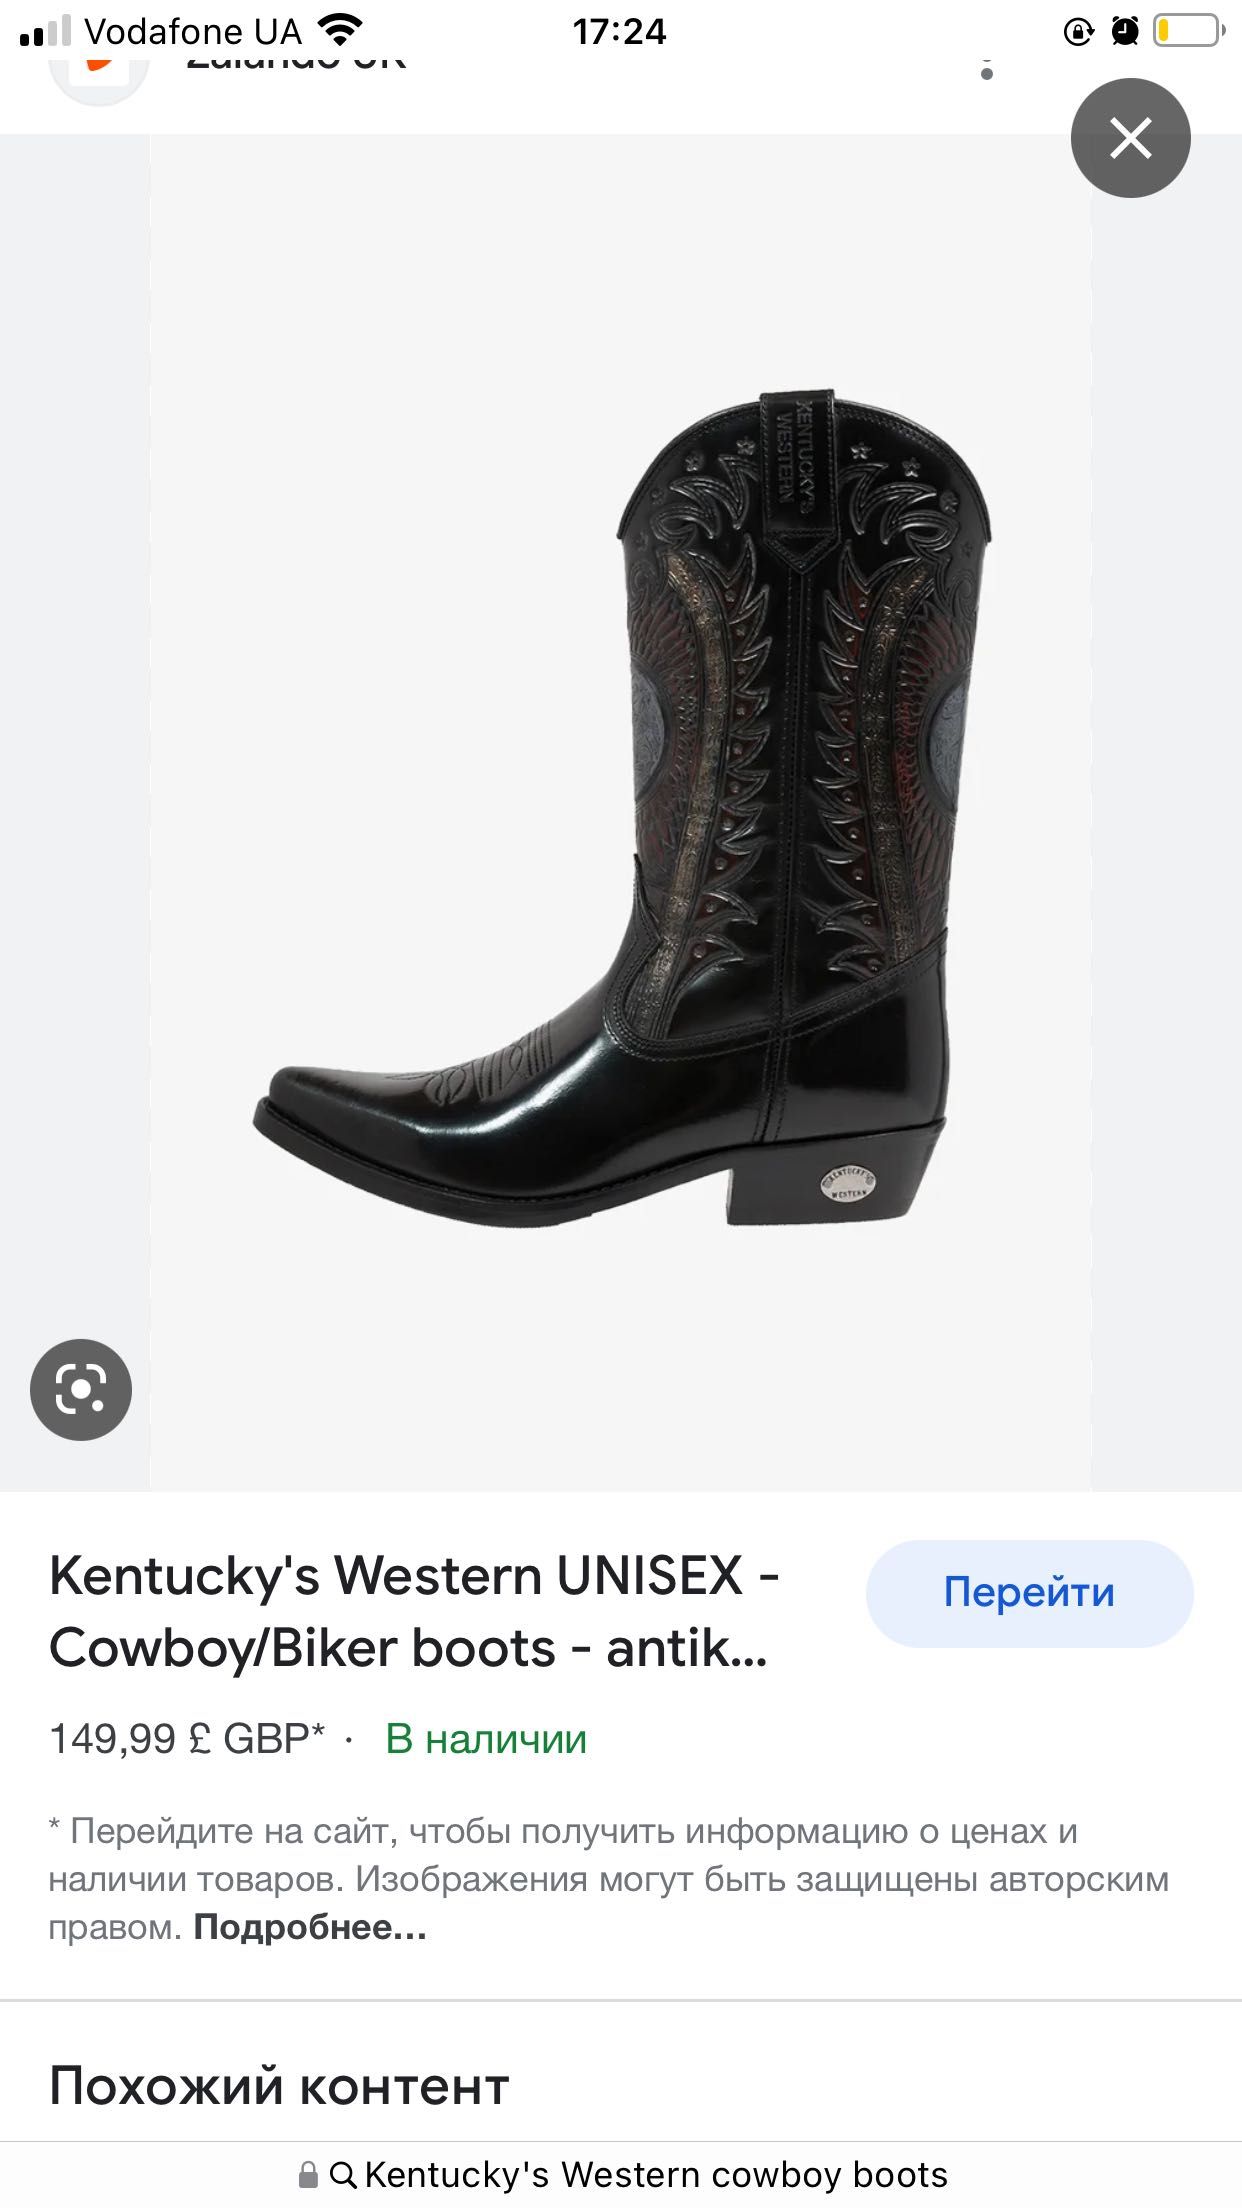 Ковбойські сапоги/Ковбойки жіночі Kentucky's Western cowboy boots